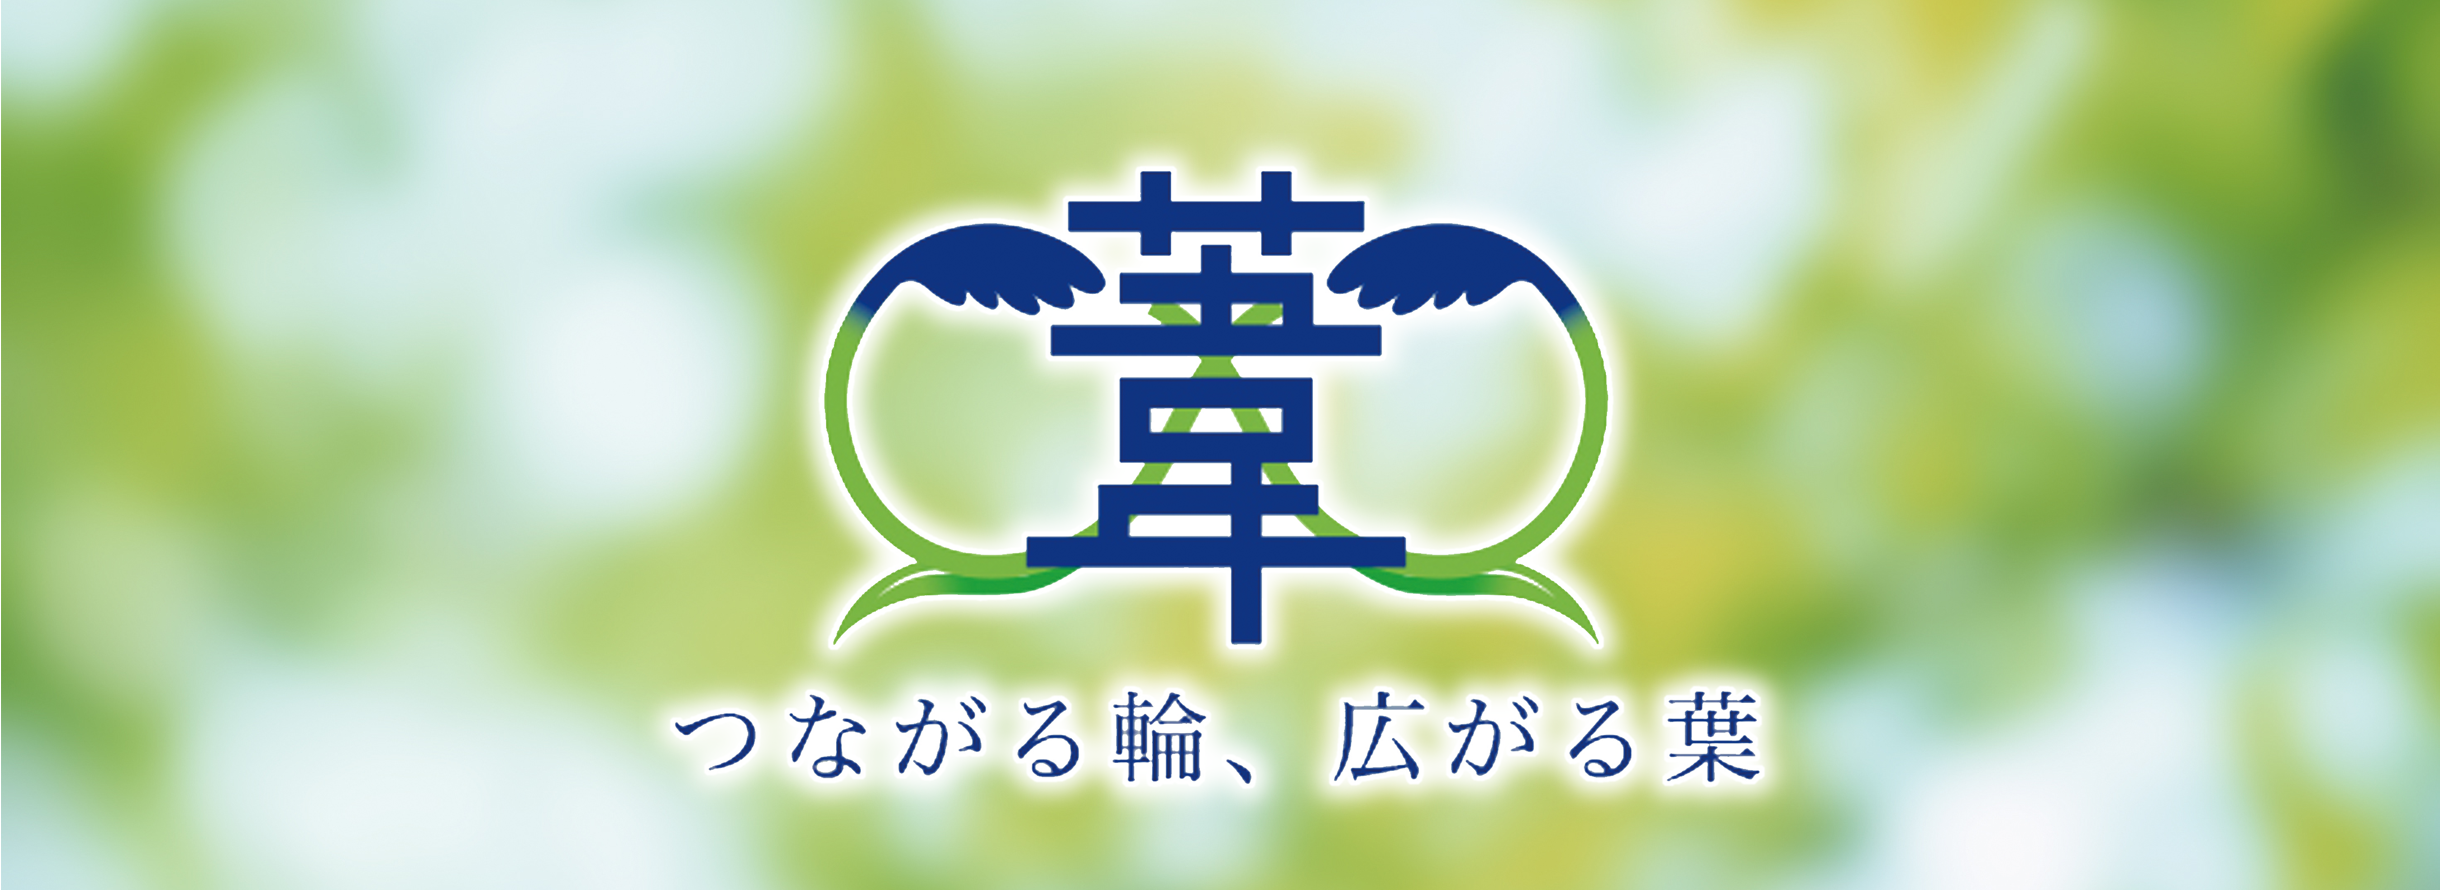 関西大学奨学生会「葦の葉倶楽部」賛助募金